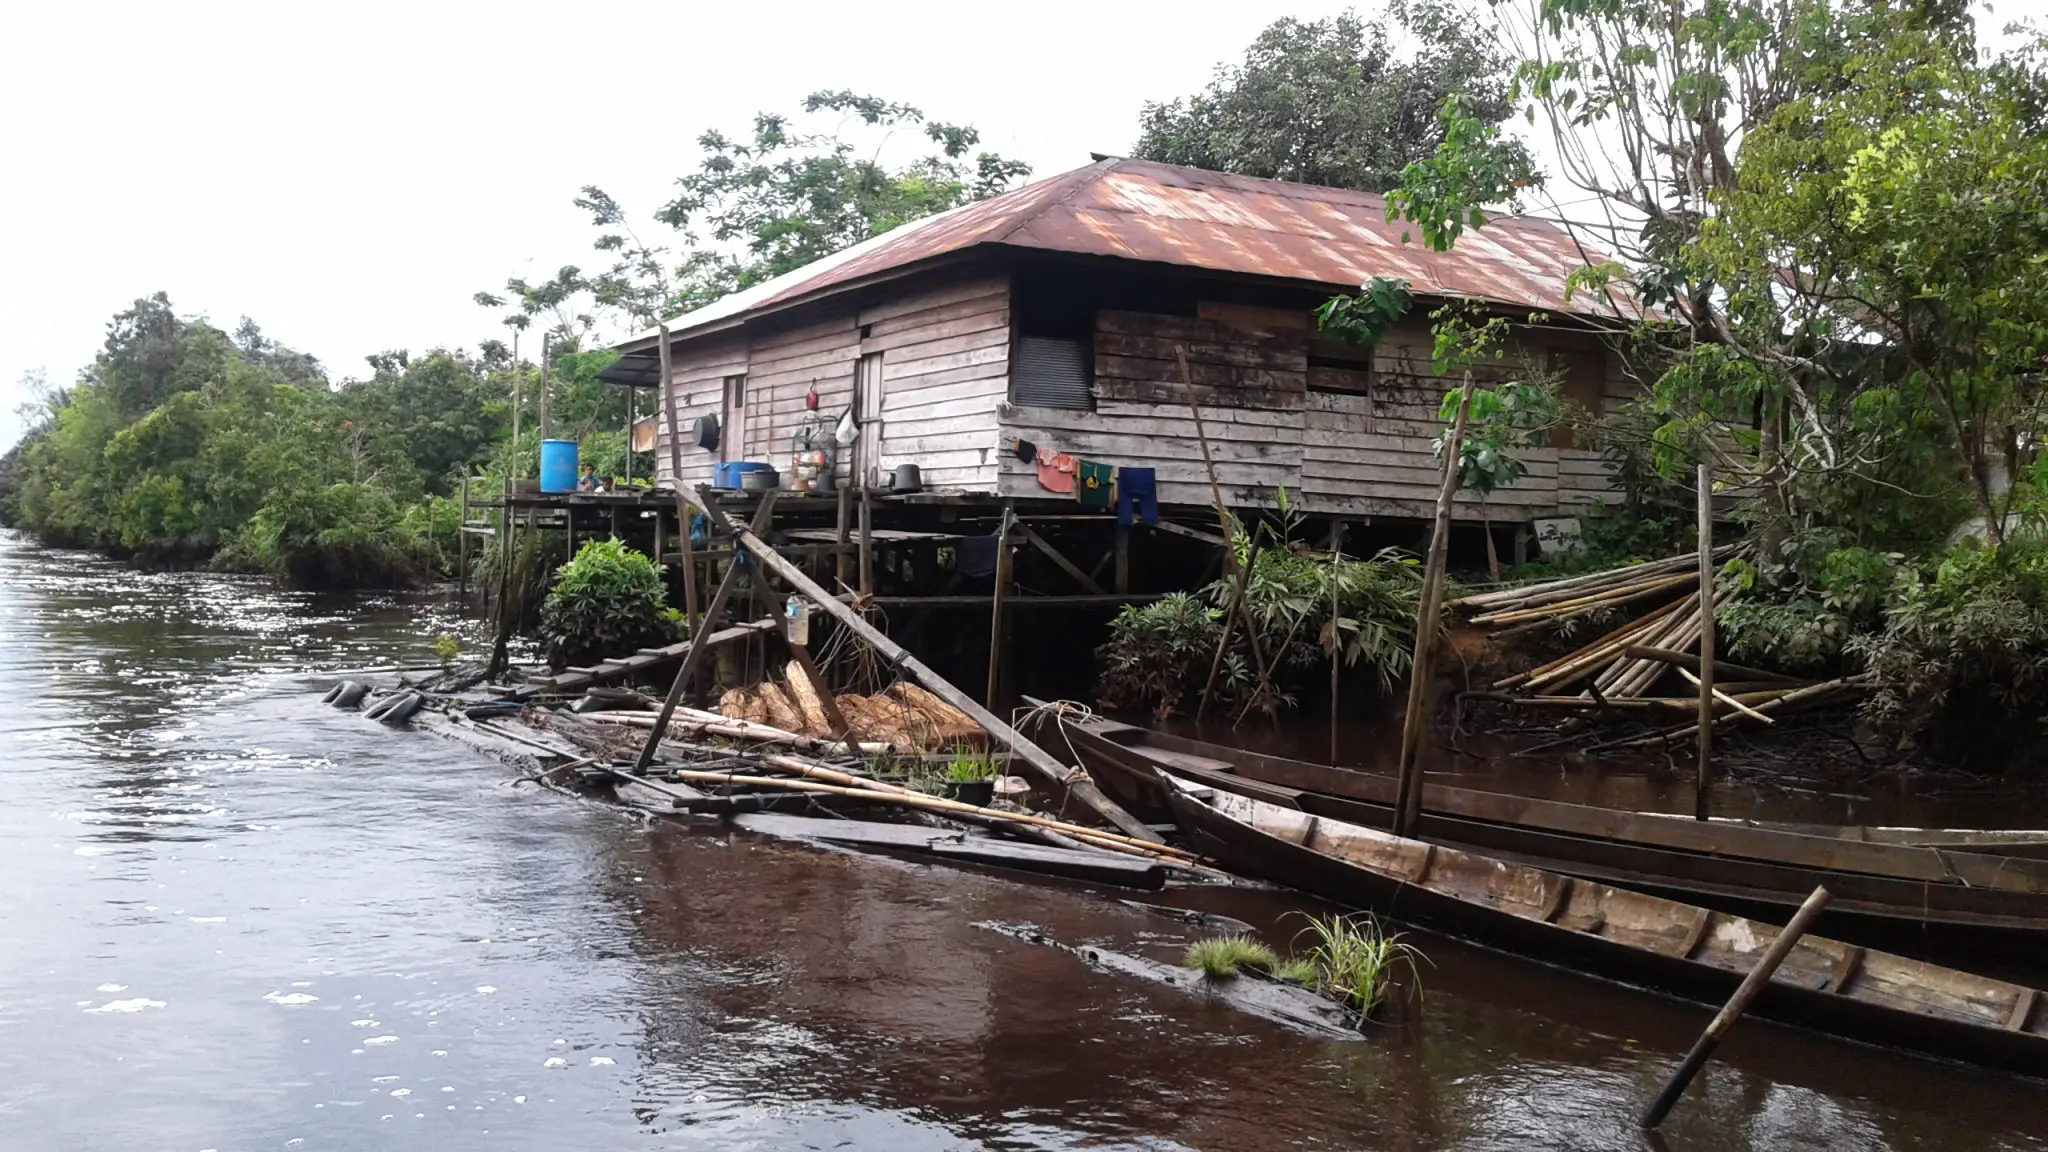 Banyak perahu kayu bermotor membawa penumpang dan kendaraan yang melebihi kapasitas, sehingga terjadi kecelakaan di sungai wilayah Kalimantan Tengah. (Liputan6.com/Rajana K)